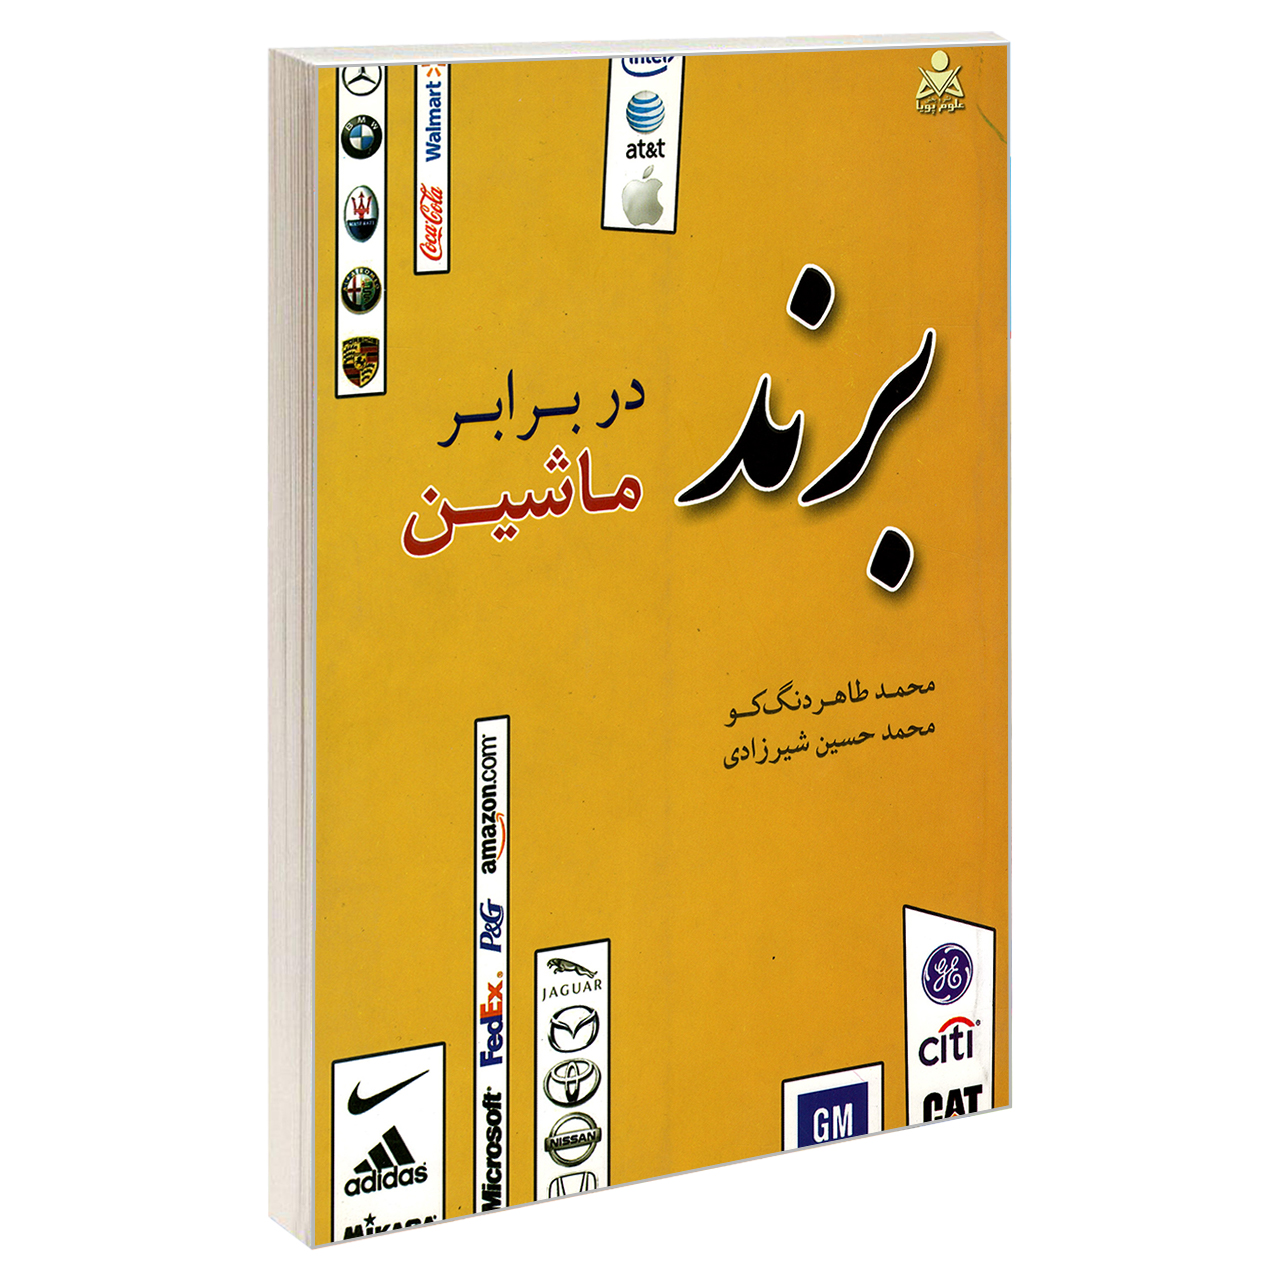 کتاب برند در برابر ماشین اثر محمد حسین شیرزادی و محمد طاهر دنگ کو نشر امید انقلاب